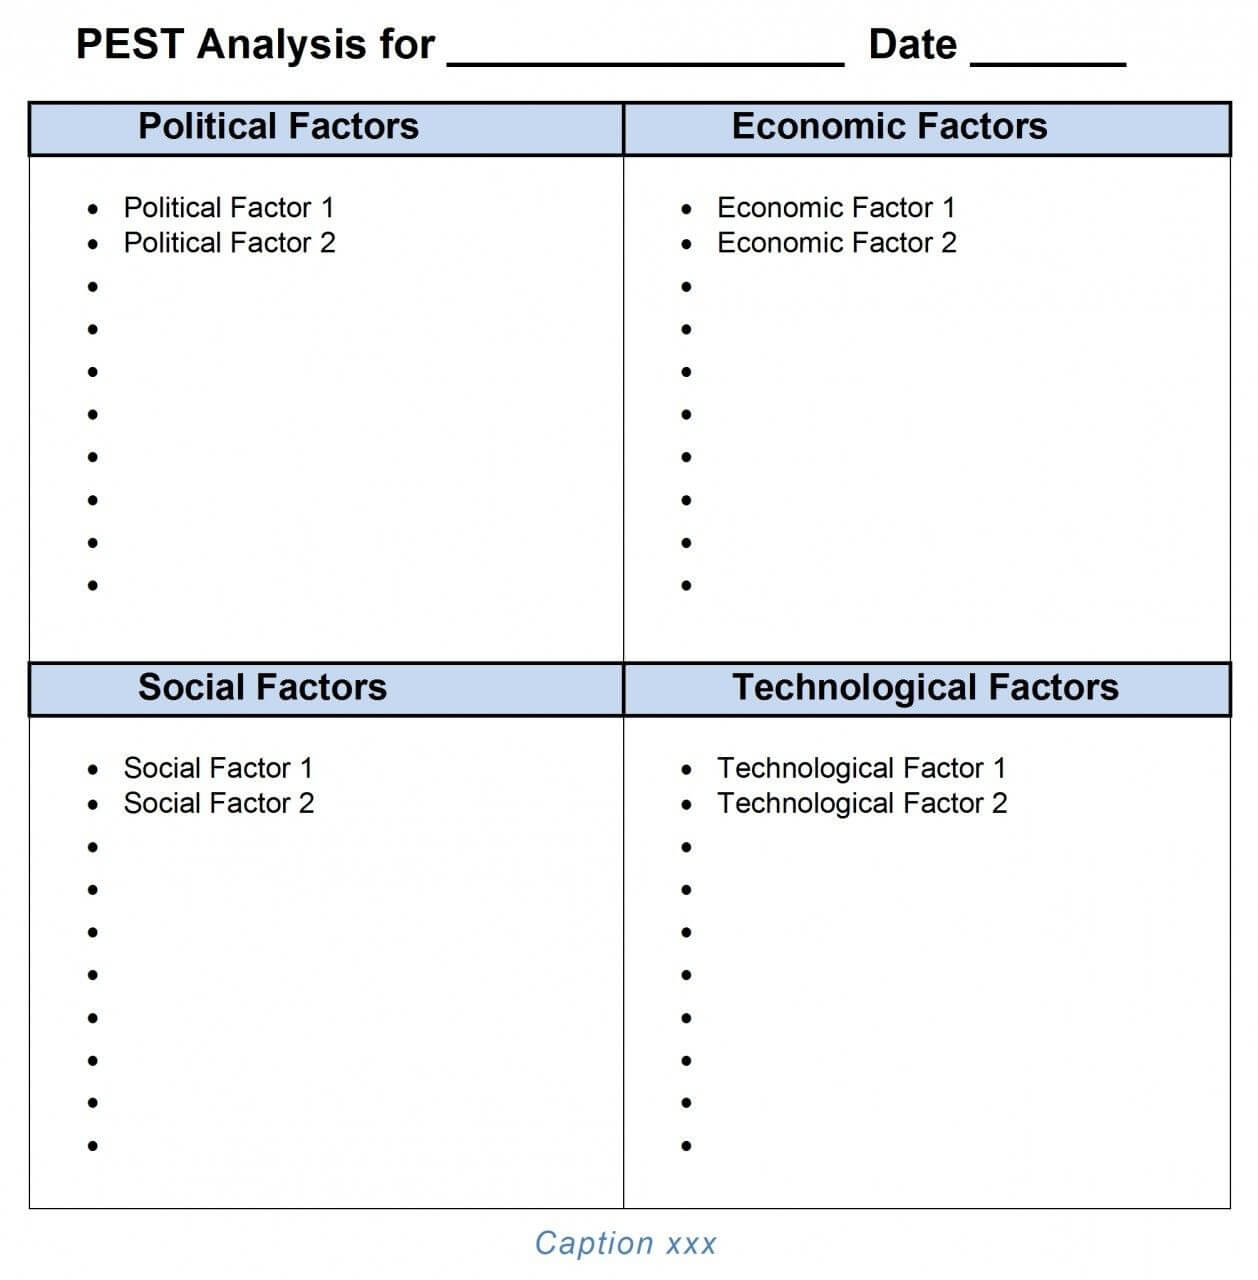 Pest Analysis Ms Word Template | Pestel Analysis, Templates Throughout Pestel Analysis Template Word